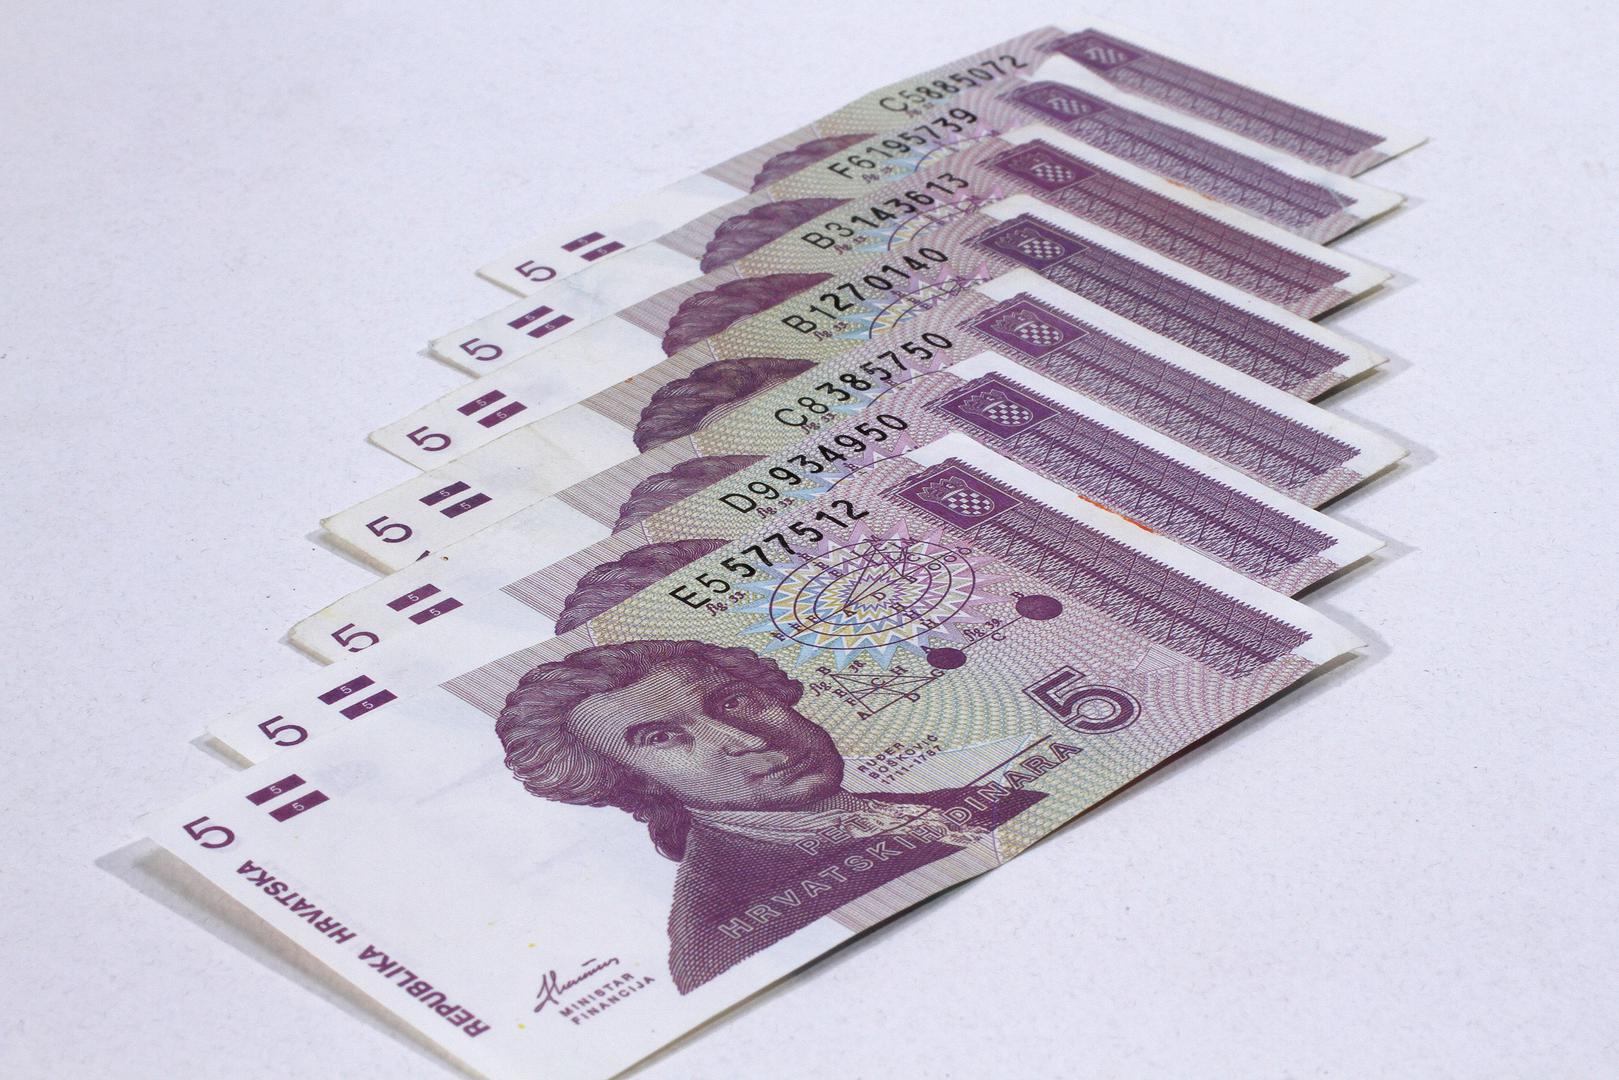 Na Dan državnosti, 30. svibnja 1994. ovaj privremeni hrvatski novac zamijenila je sadašnja hrvatska valuta - kuna.

